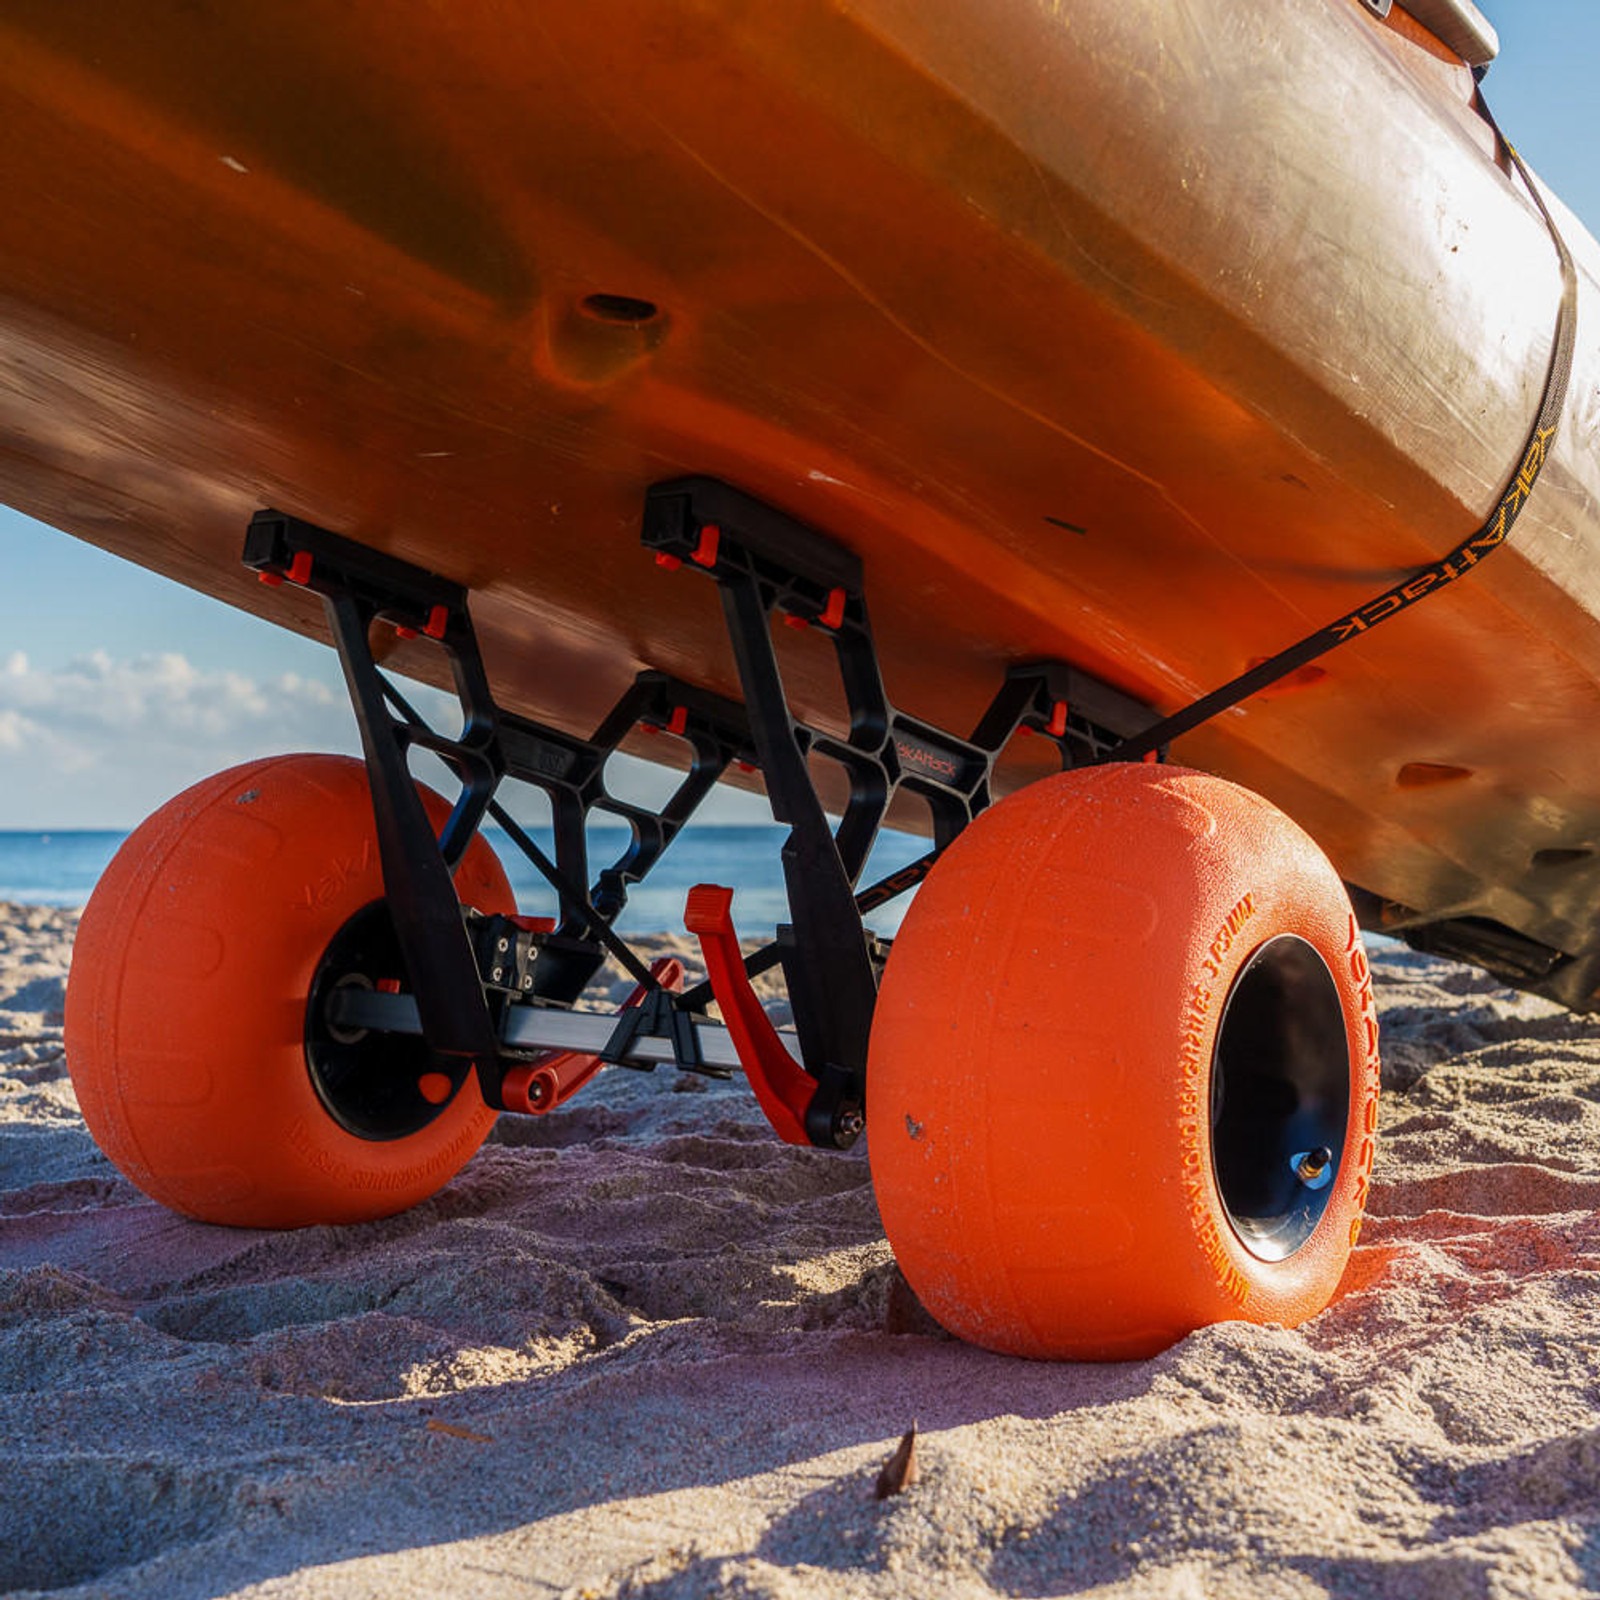  TowNStow Bunkster Kayak Cart with Sand Tires 